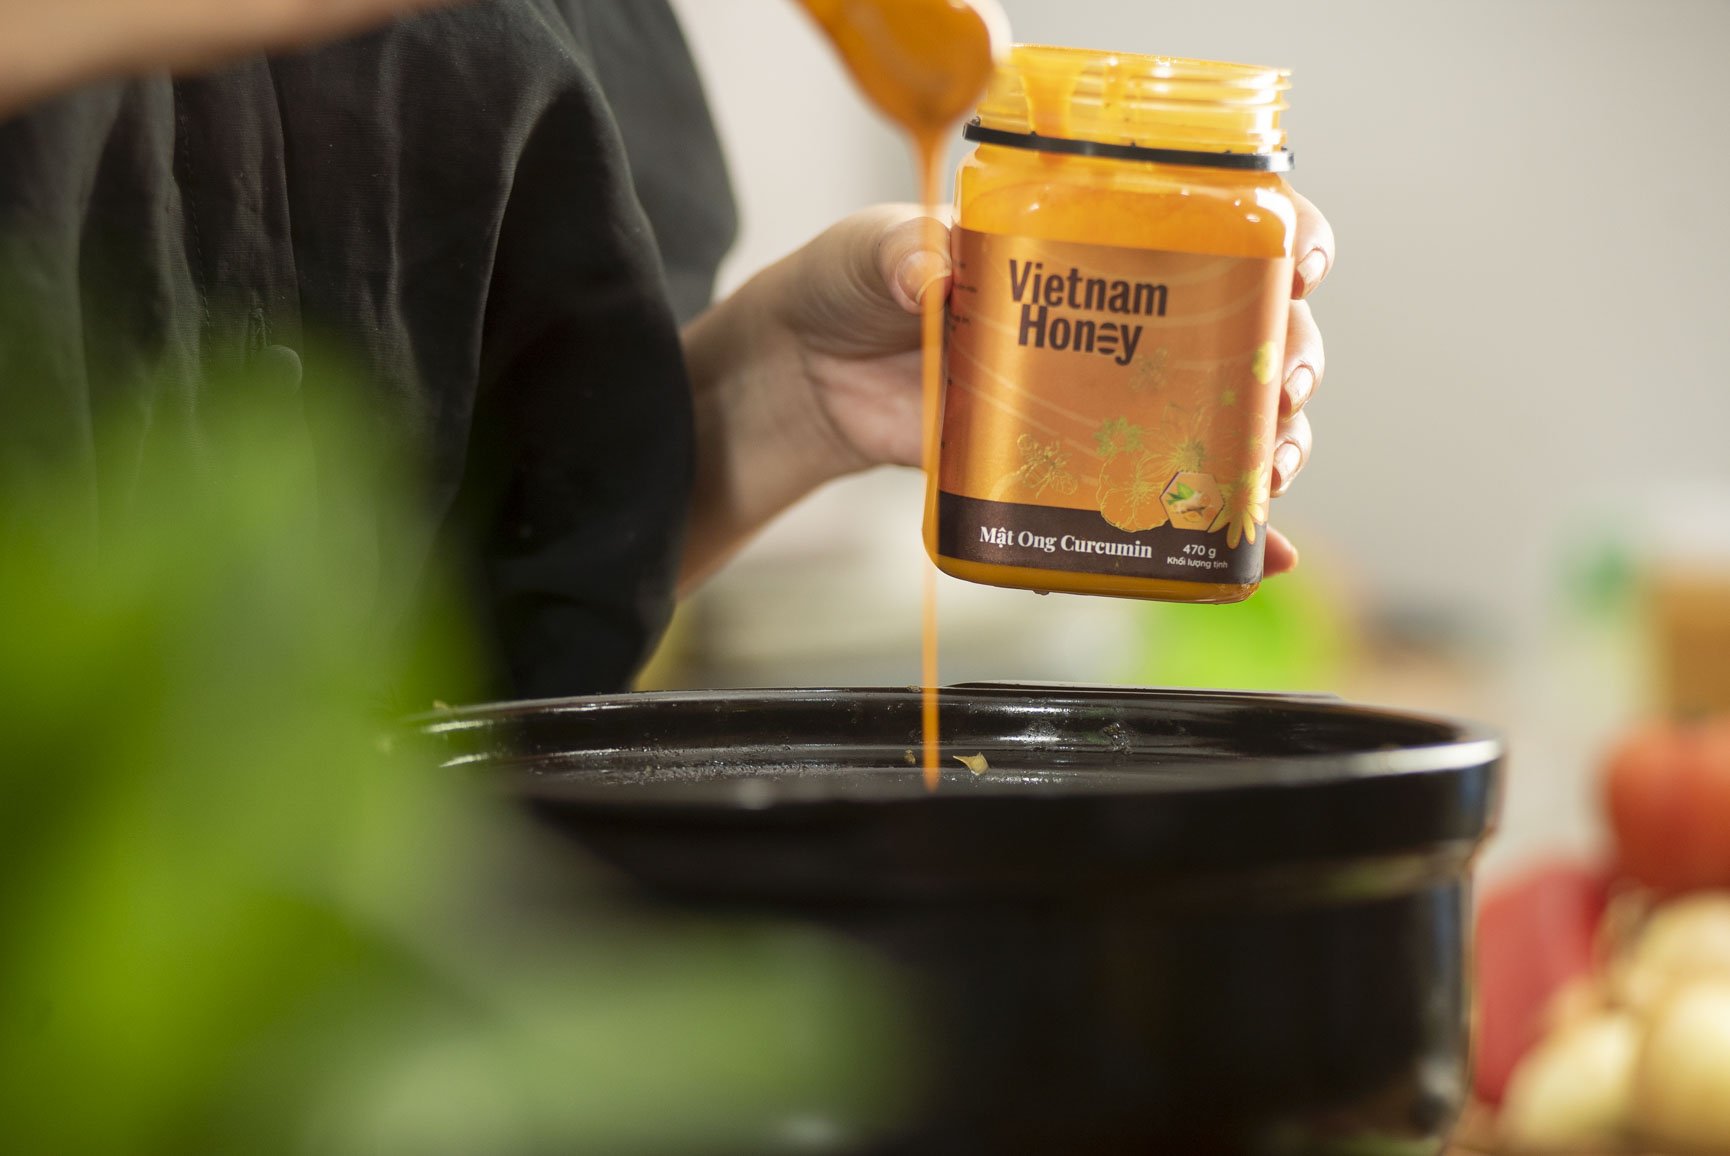 mật ong curcumin vietnam honey